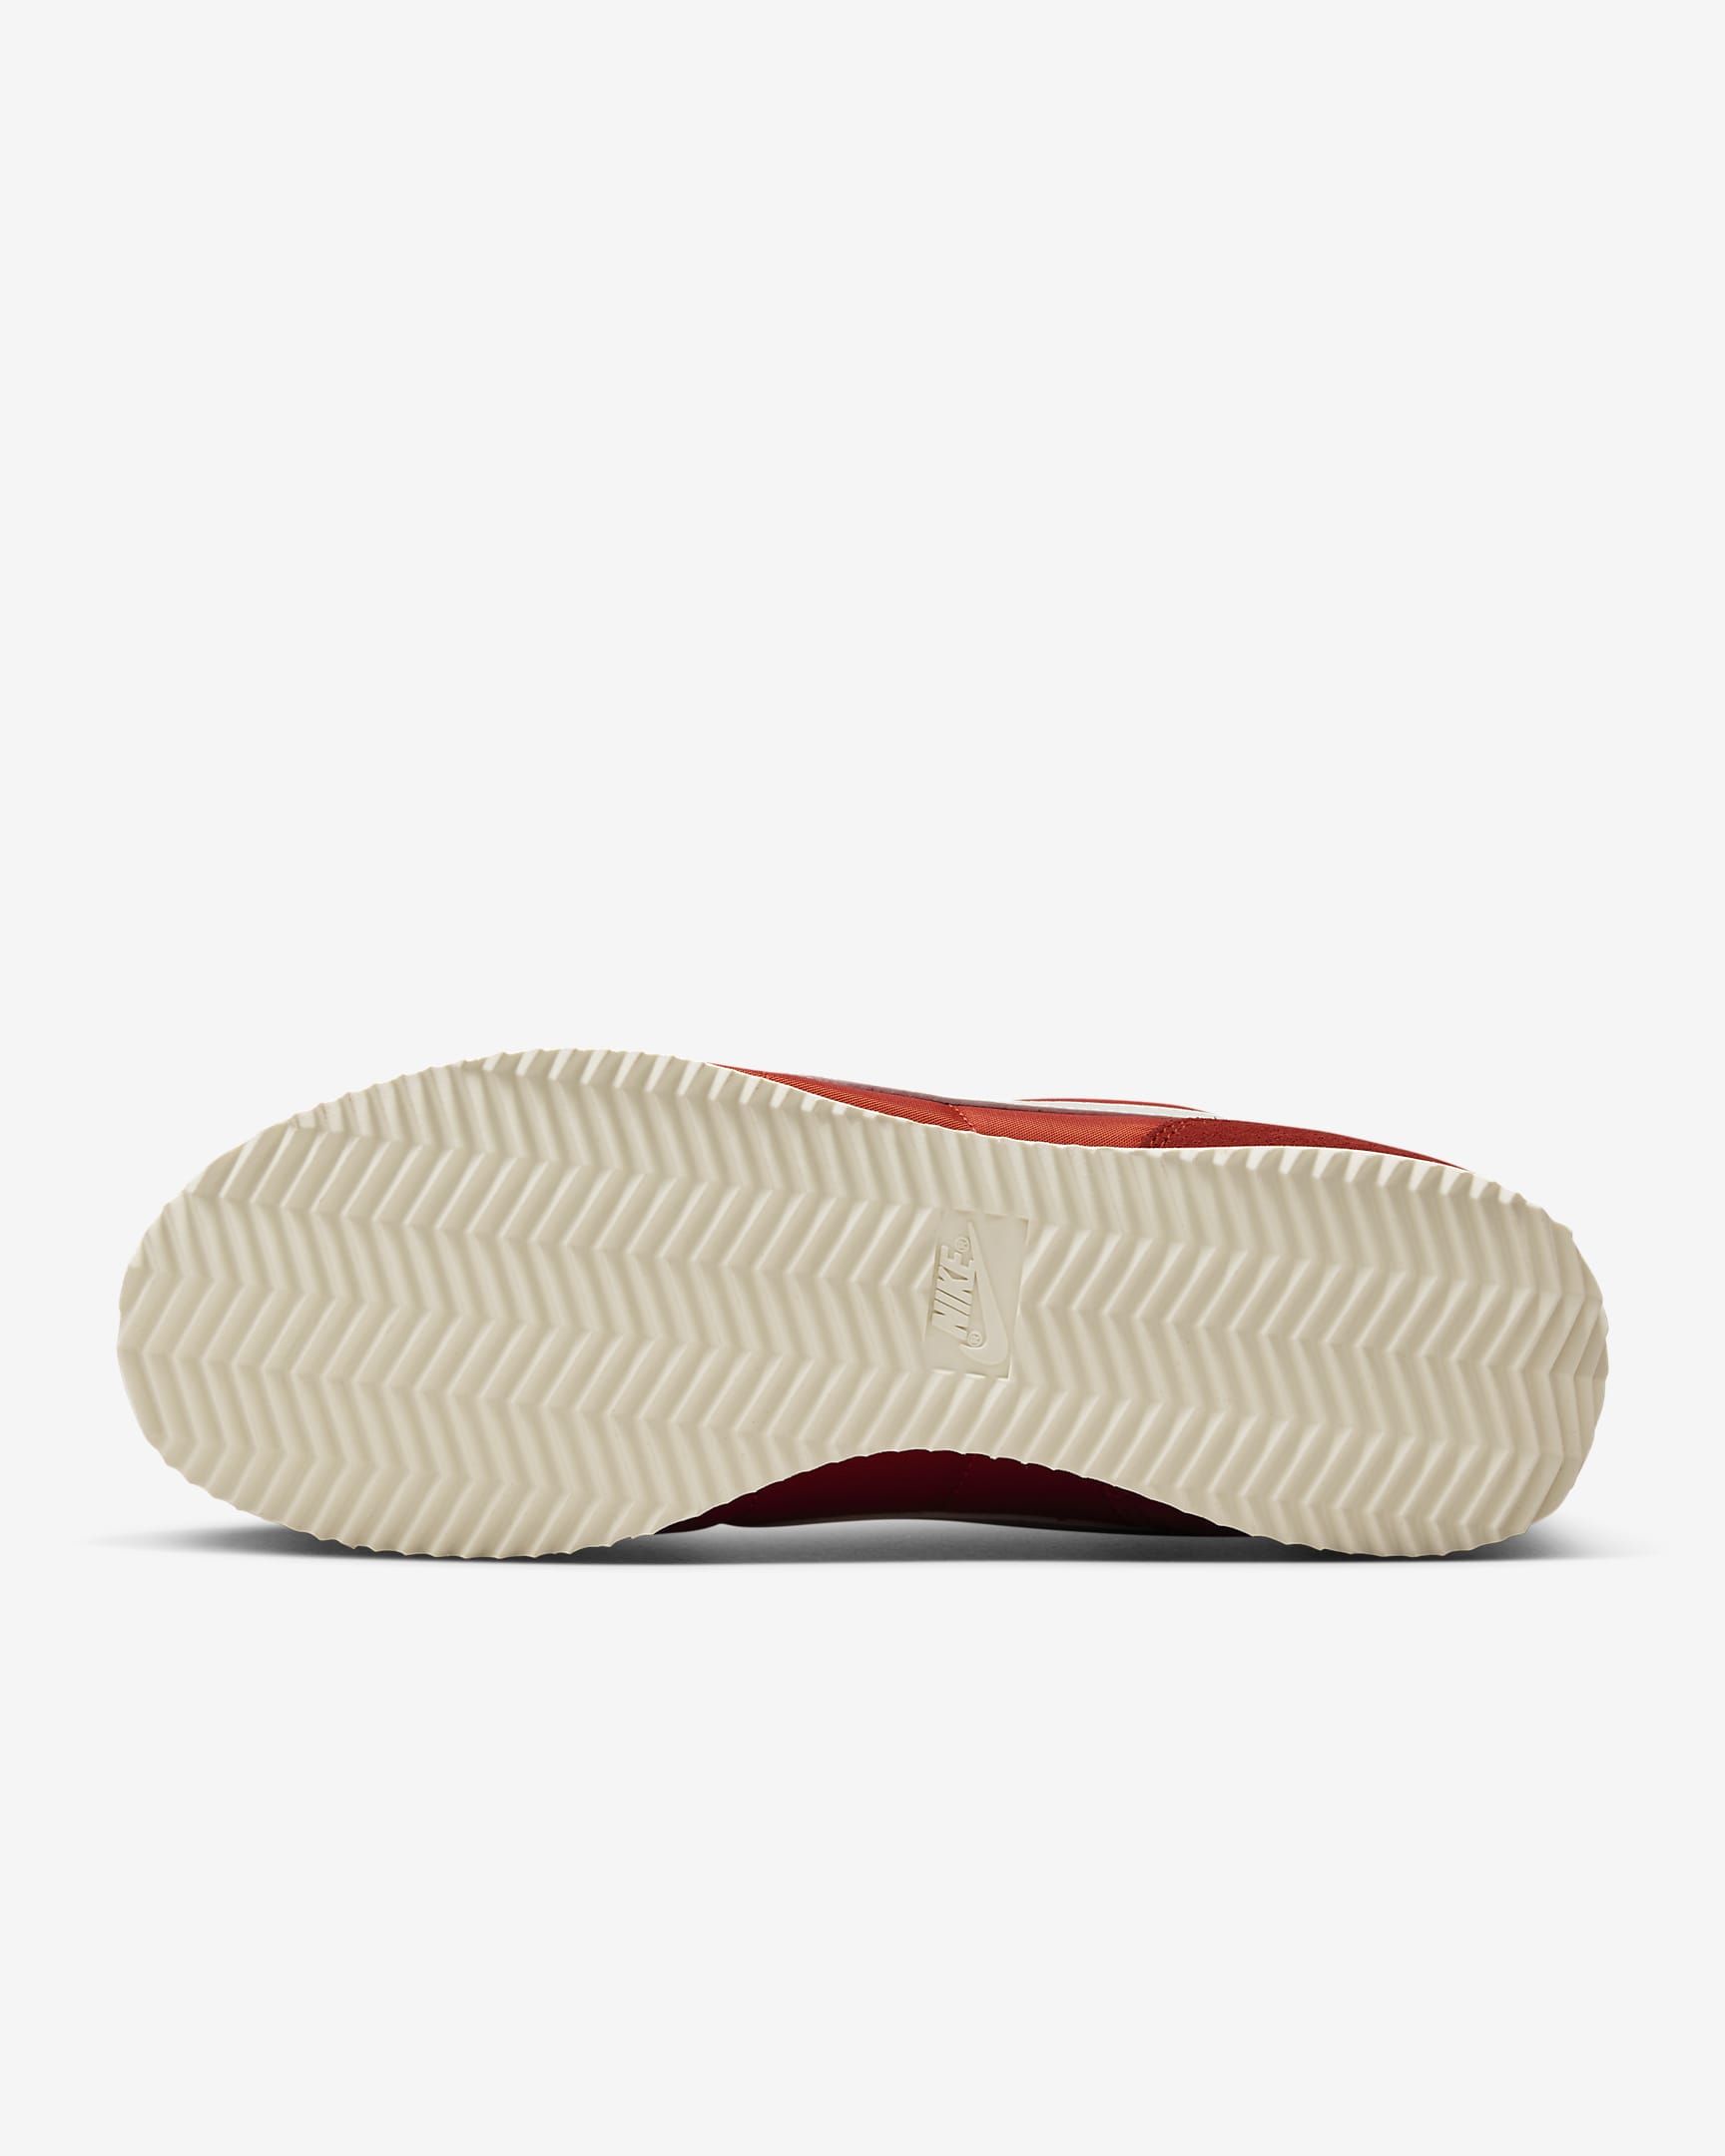 Chaussure Nike Cortez Textile pour femme - Picante Red/University Blue/Coconut Milk/Sail